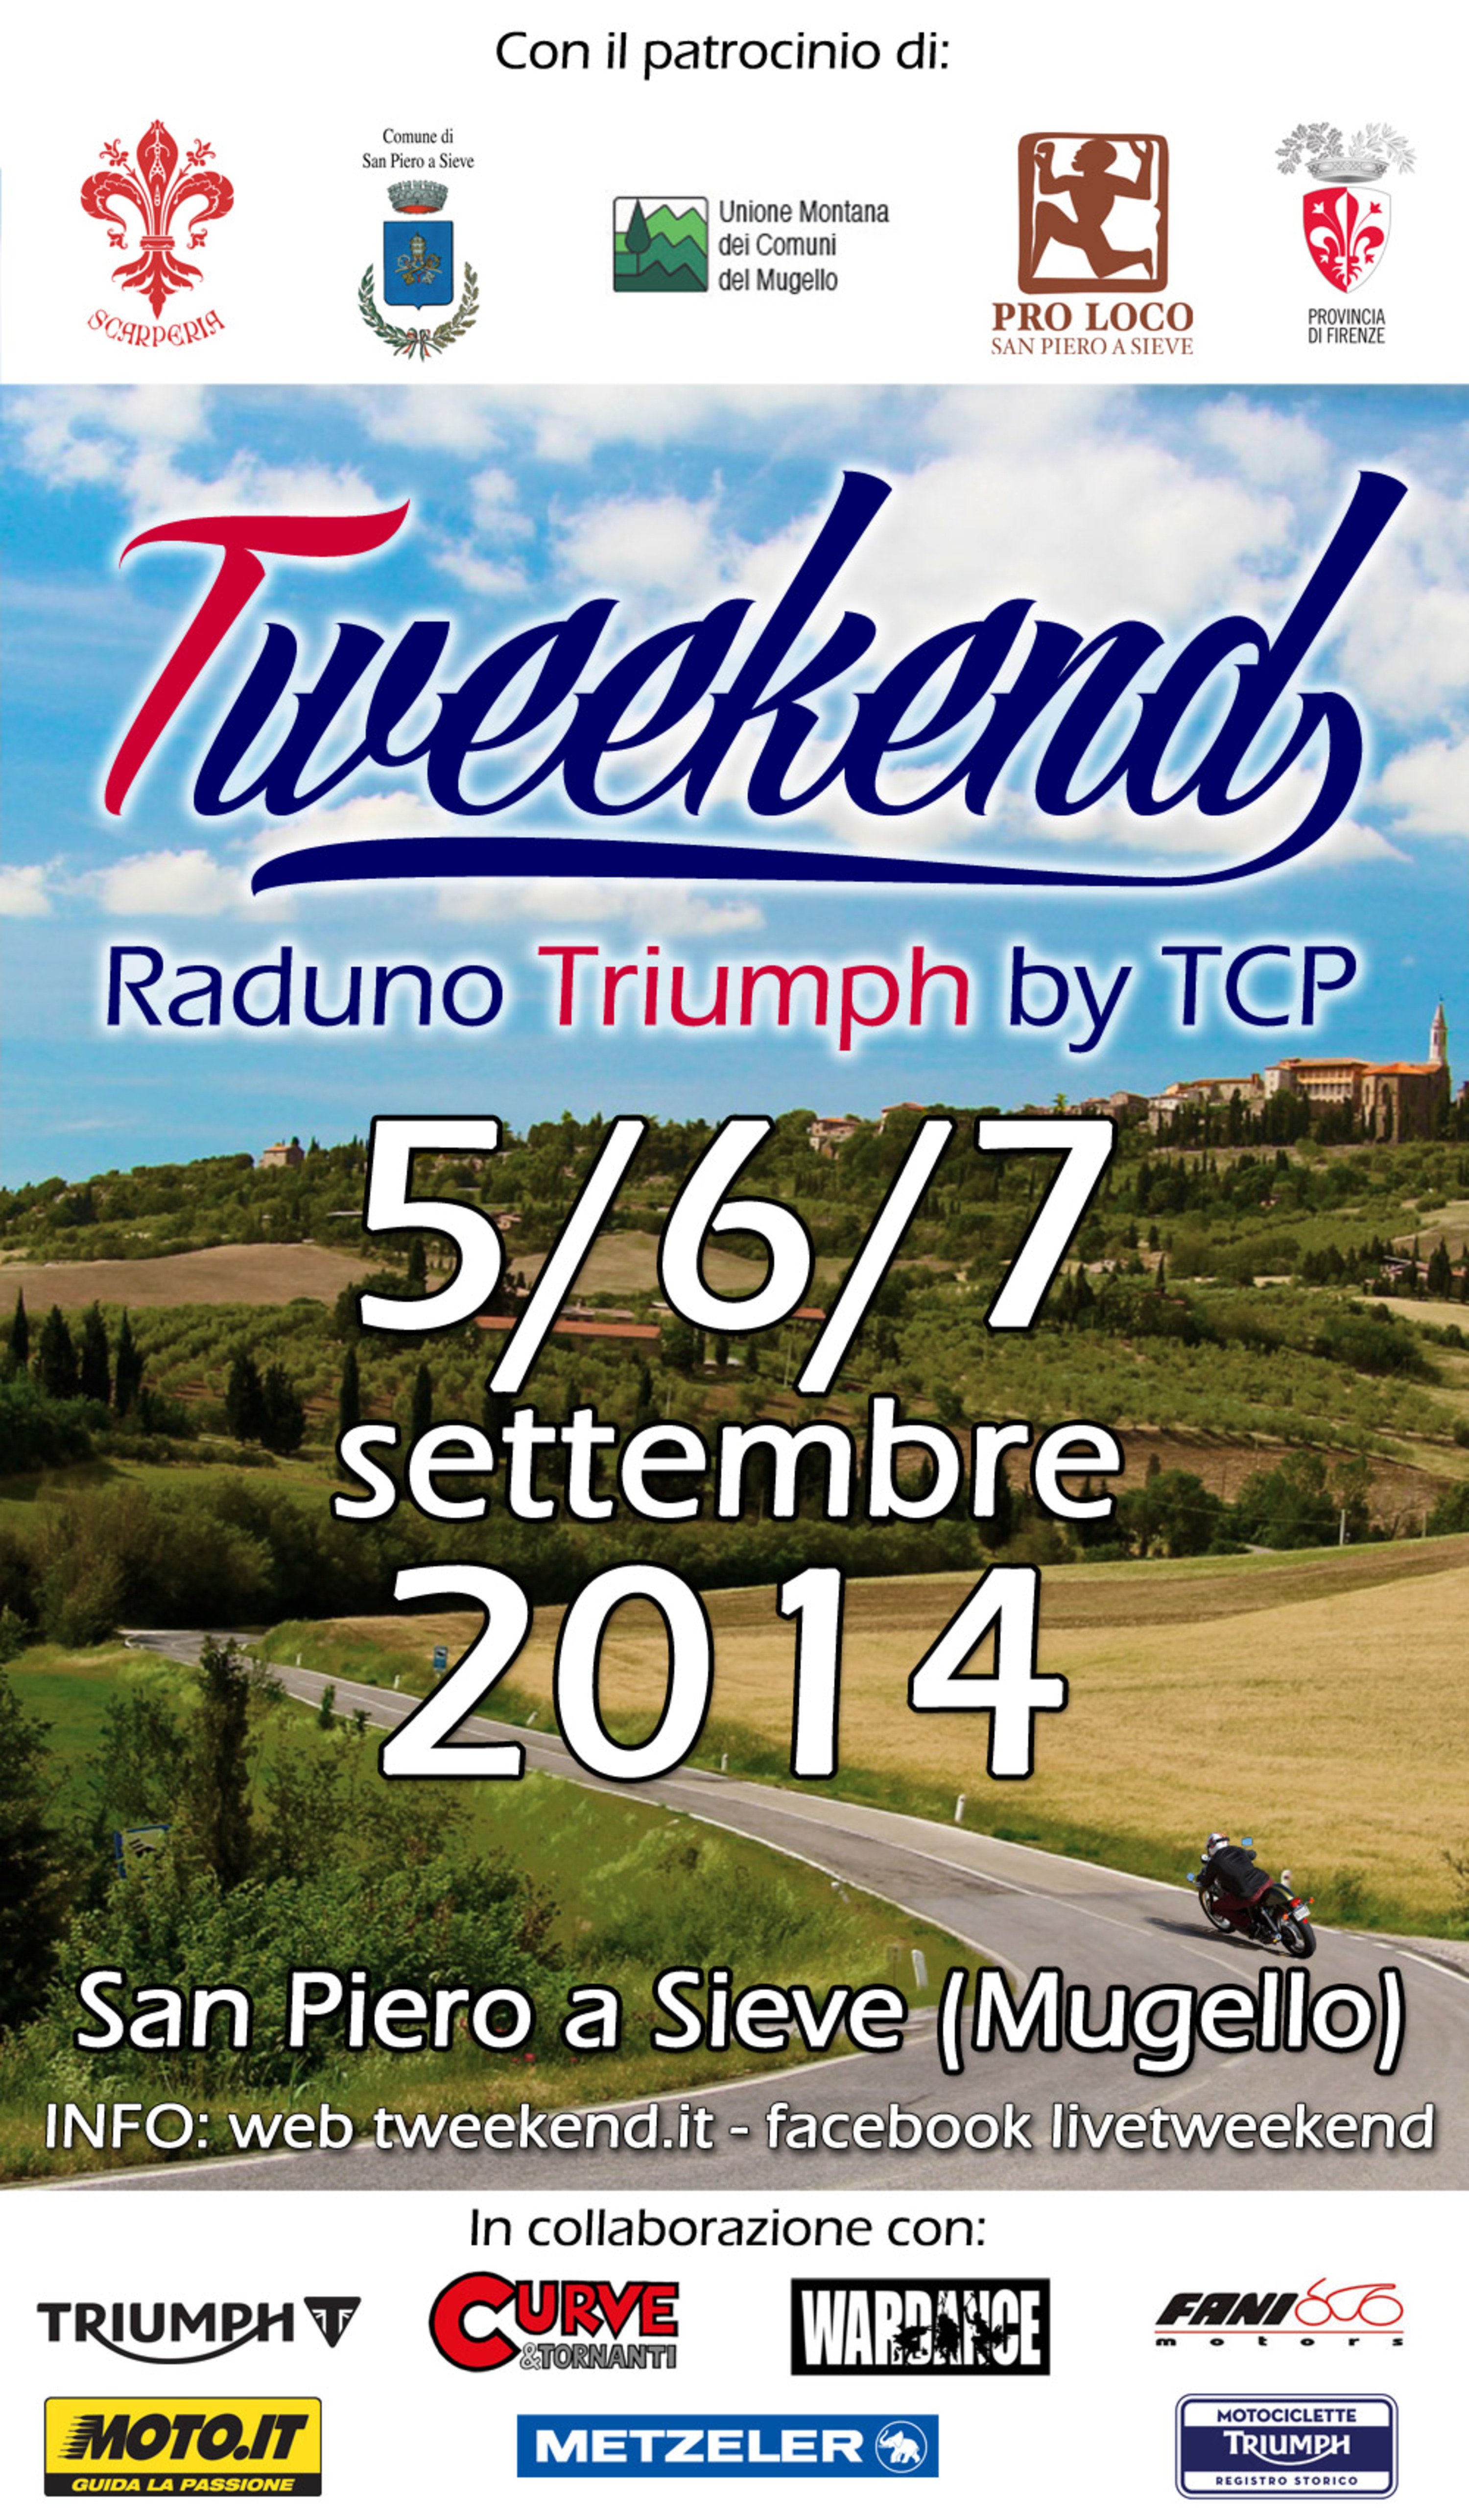 Tweekend, il raduno Triumph a Scarperia dal 5 al 7 settembre insieme a Moto.it